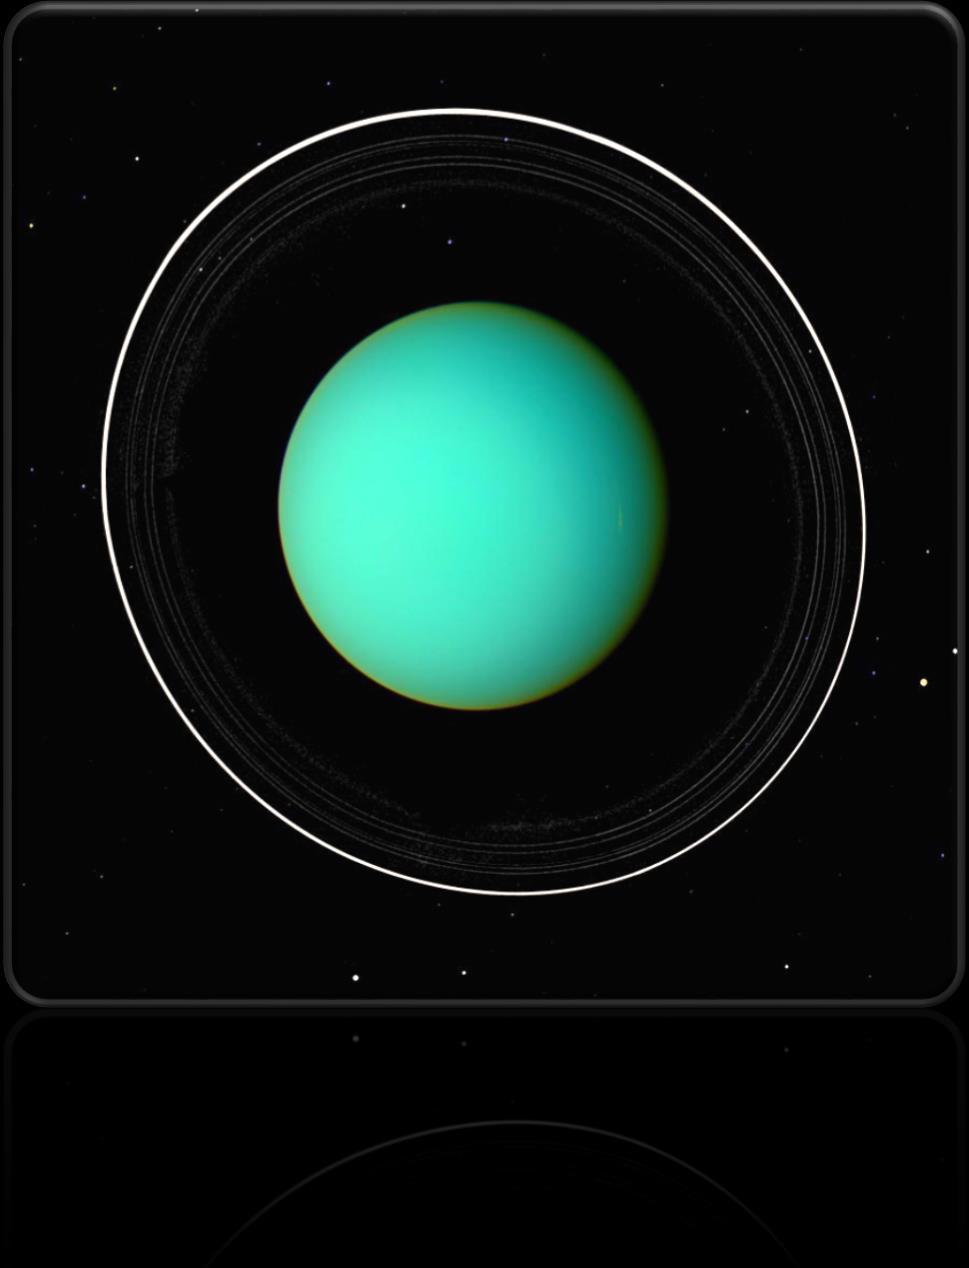 Uranovy prstence devět úzkých prstenců leží uvnitř rozsáhlé vodíkové atmosféry Uranu šířka prstenců od 1 do 12 km tloušťka 7-20 m tmavě šedá barva, albedo odpovídá uhlíkatým chondritům částice uvnitř